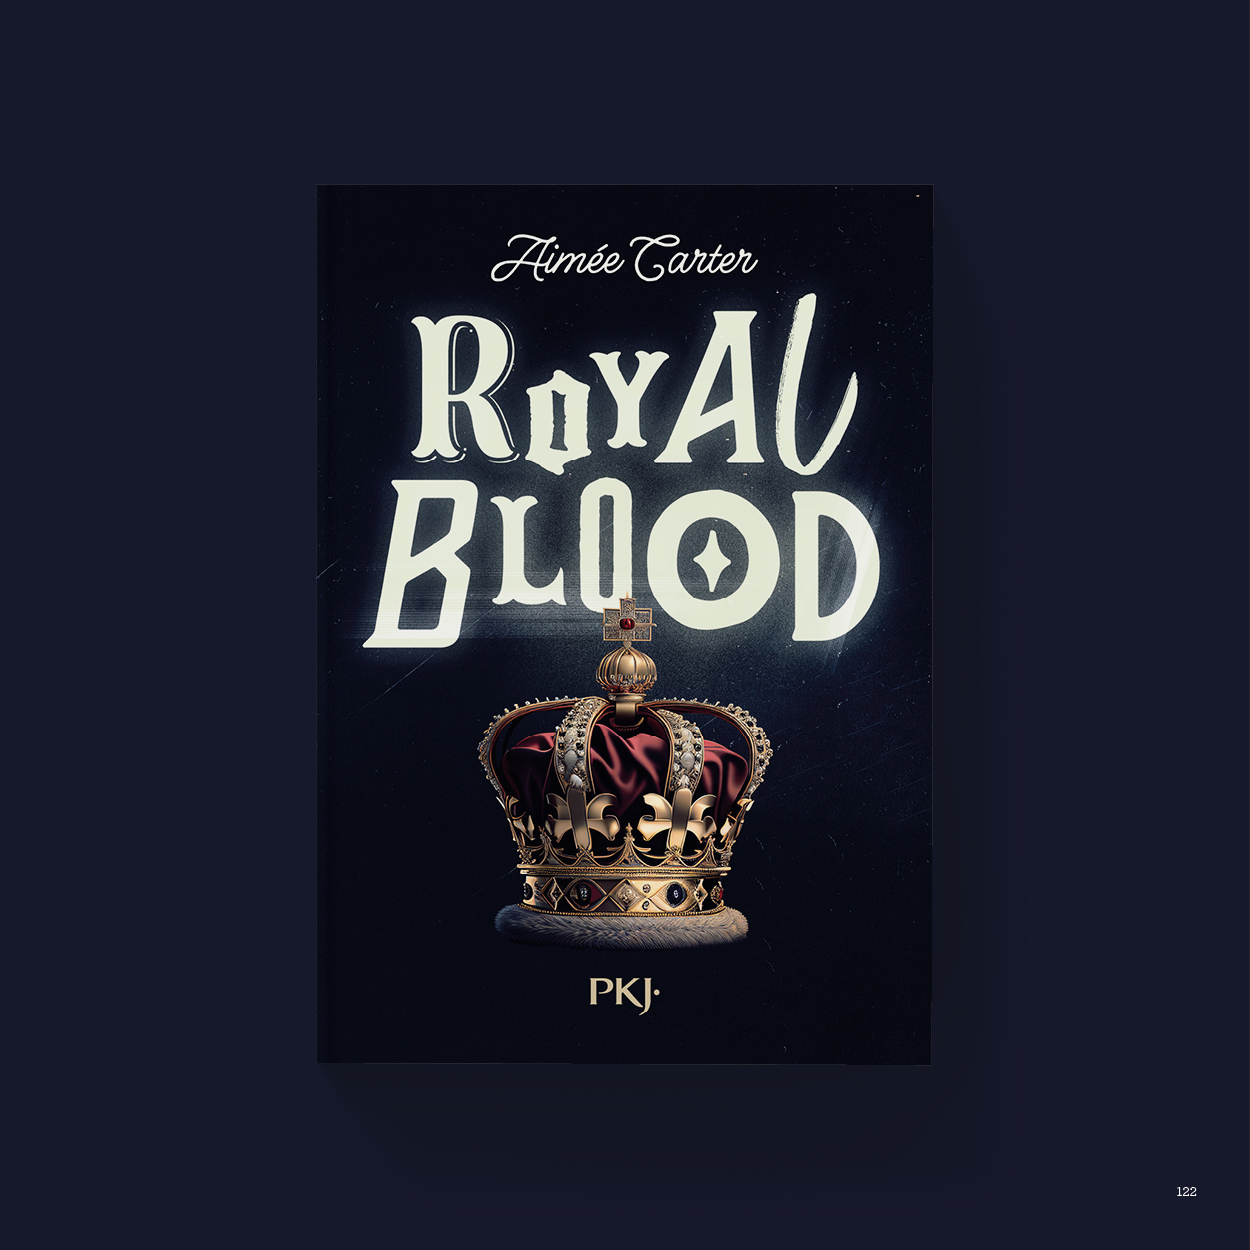 Vue_Royal_blood_122